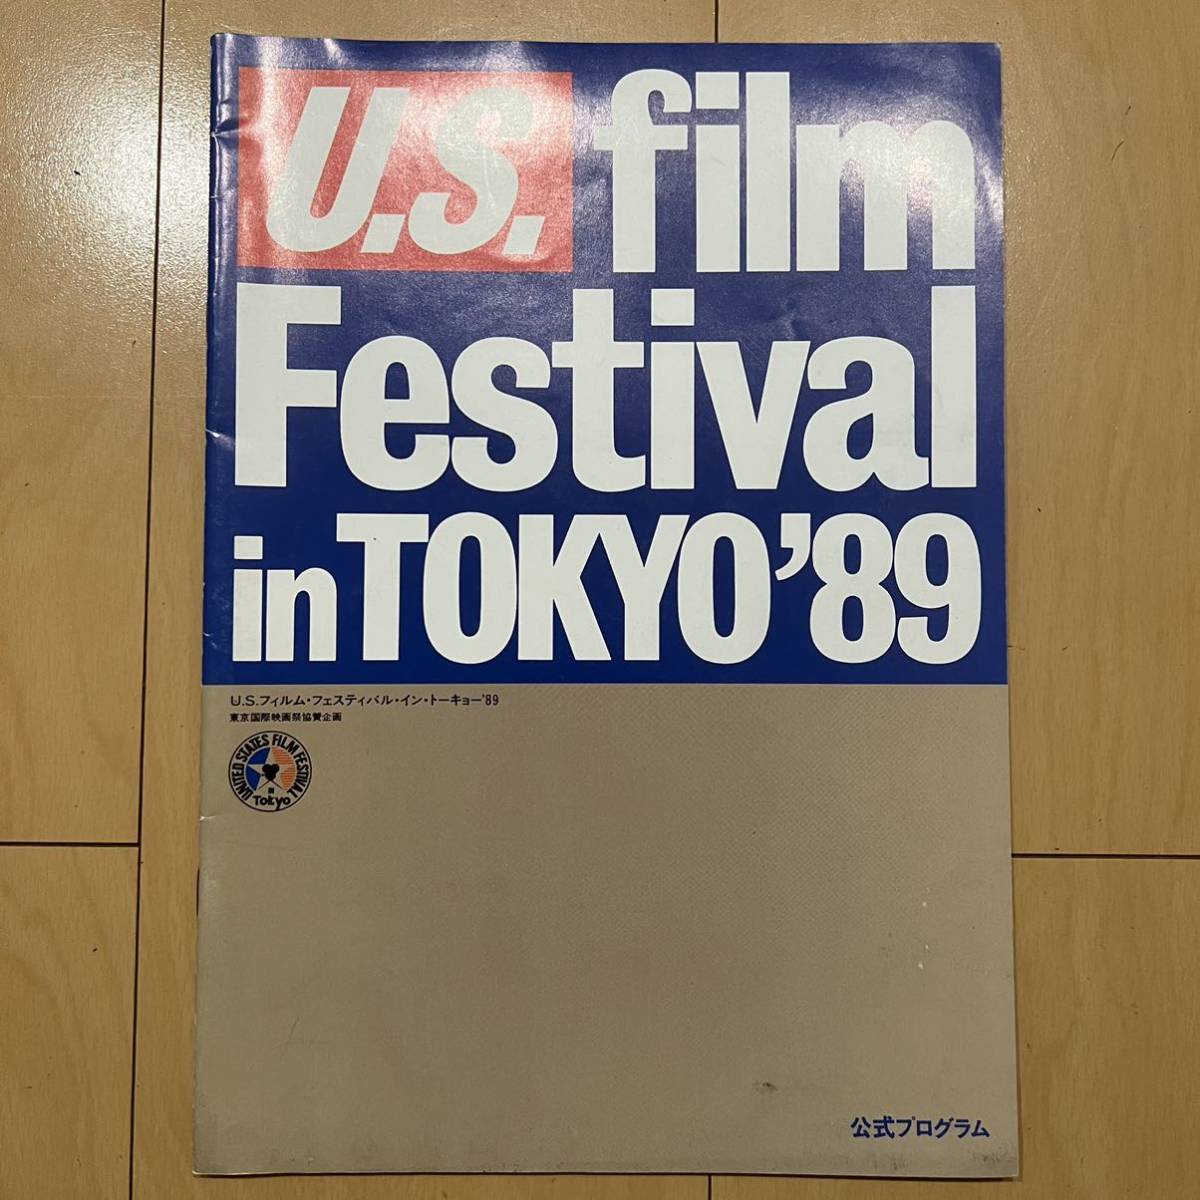 激レア! 1989年 U.S. フィルム・フェスティバル パンフレット 格安!_画像1